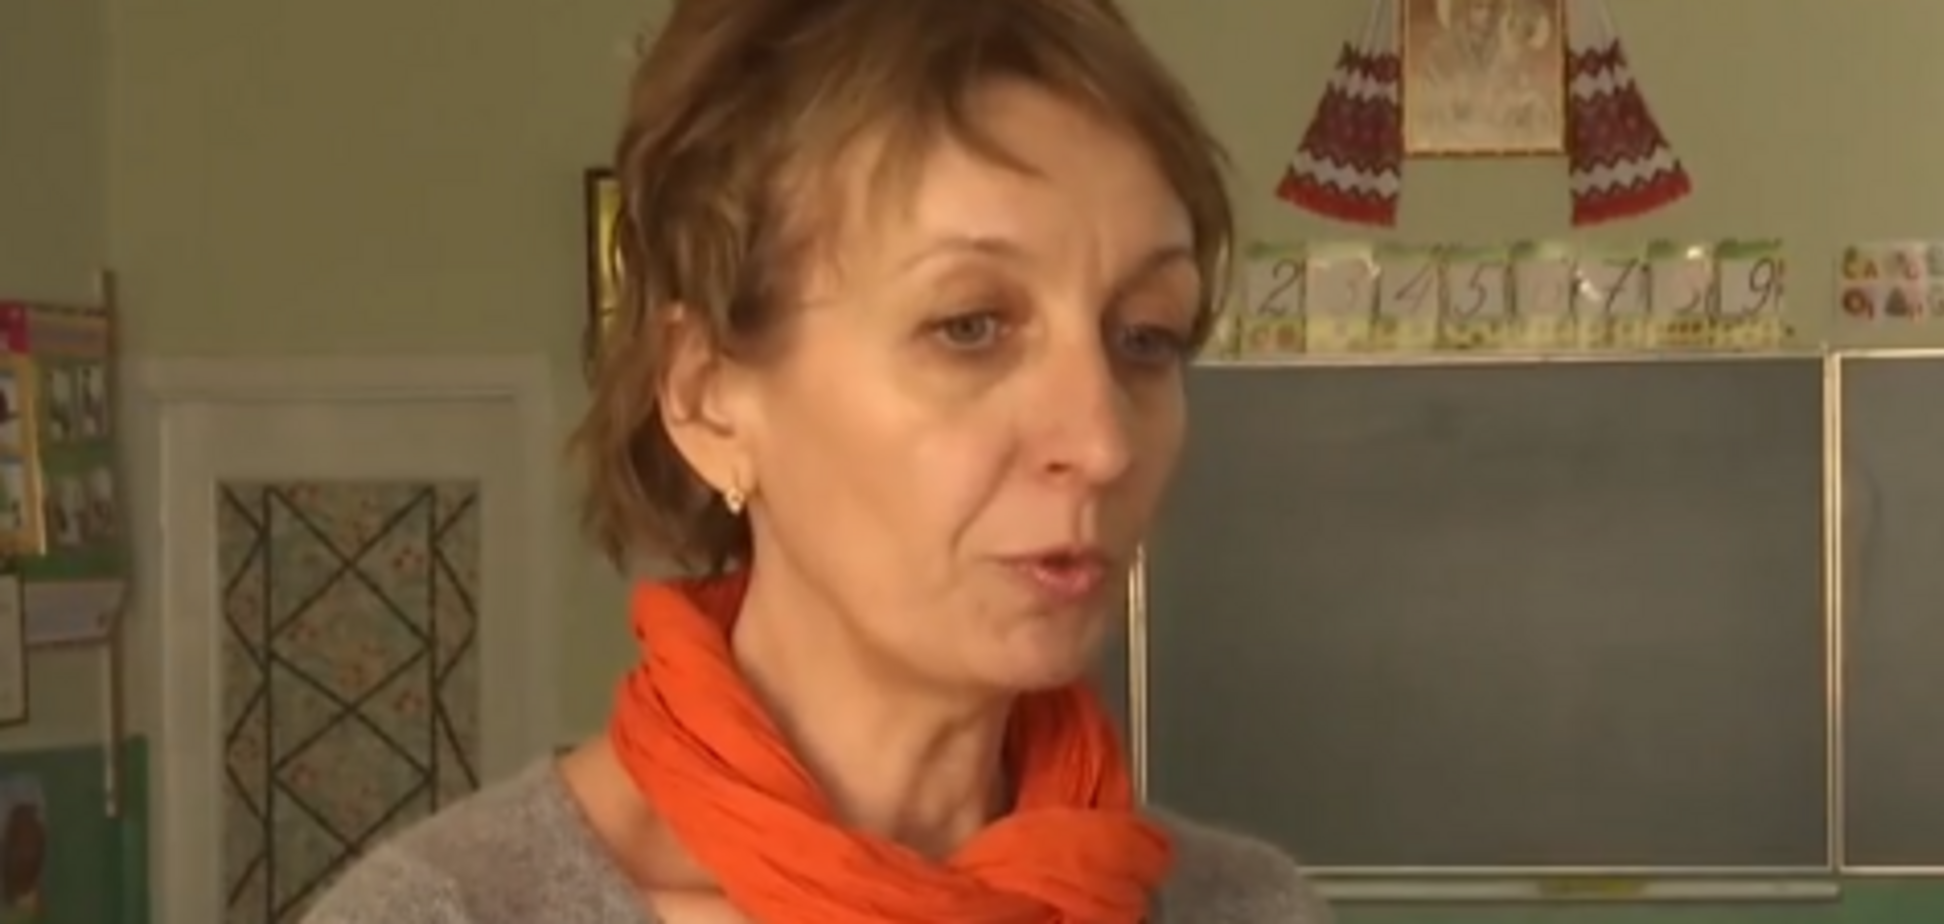  ''Никто не будет р*гачку собирать!'' Скандал вокруг учительницы во Львове получил продолжение